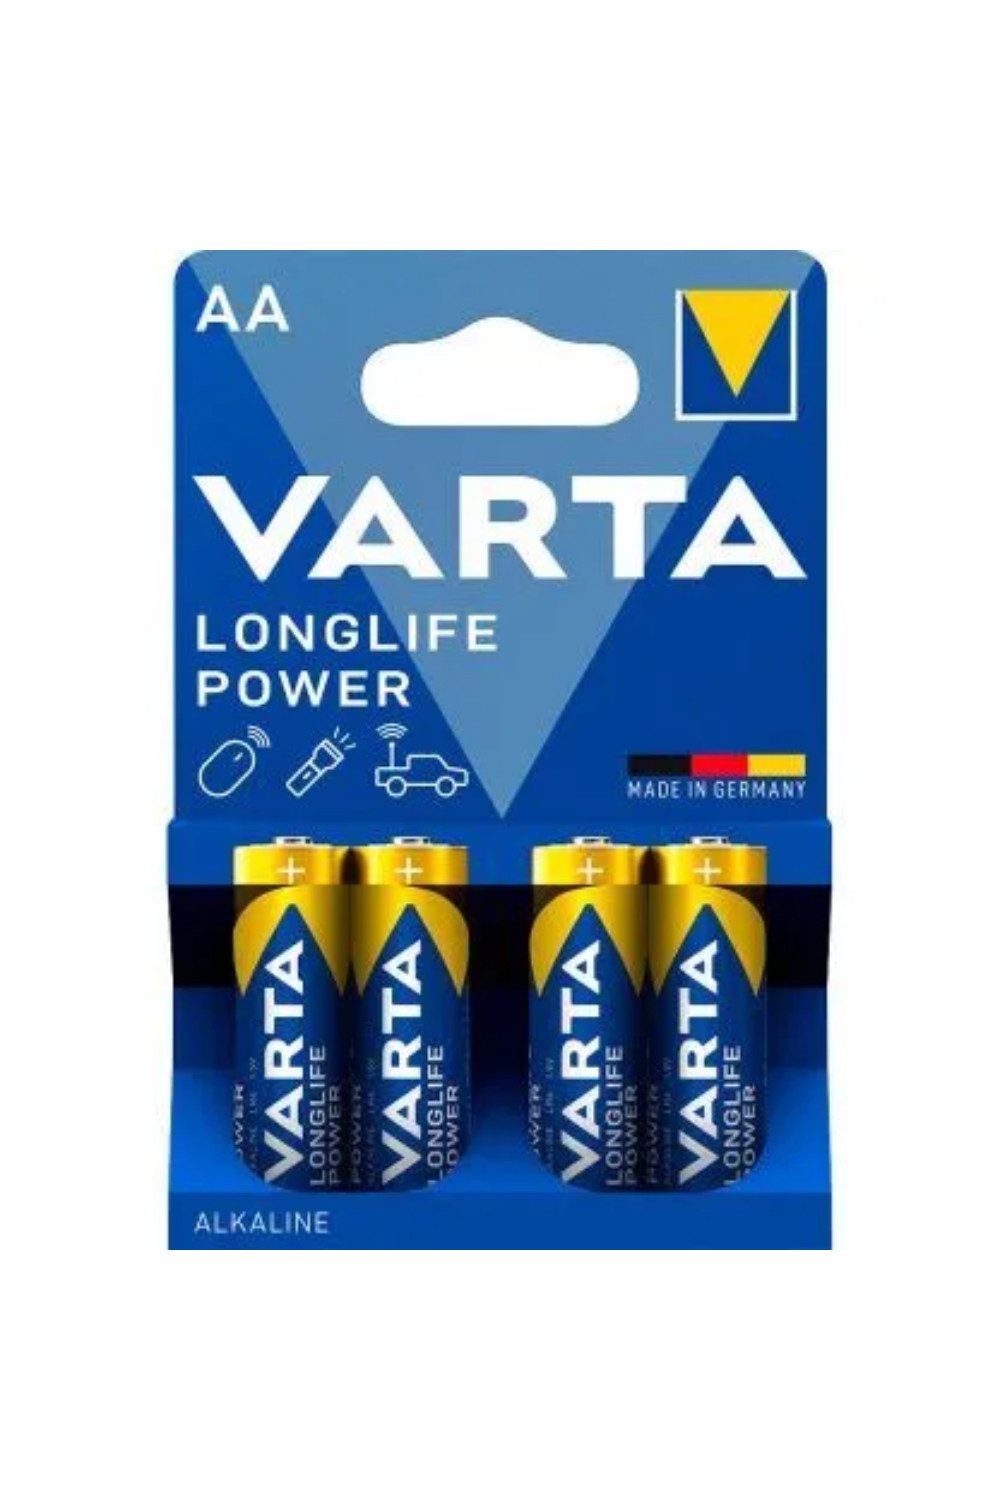 VARTA 4 VARTA Batterien LONGLIFE Batterie, 1,5 V (1,5V V, 4 St), Power Mignon AA